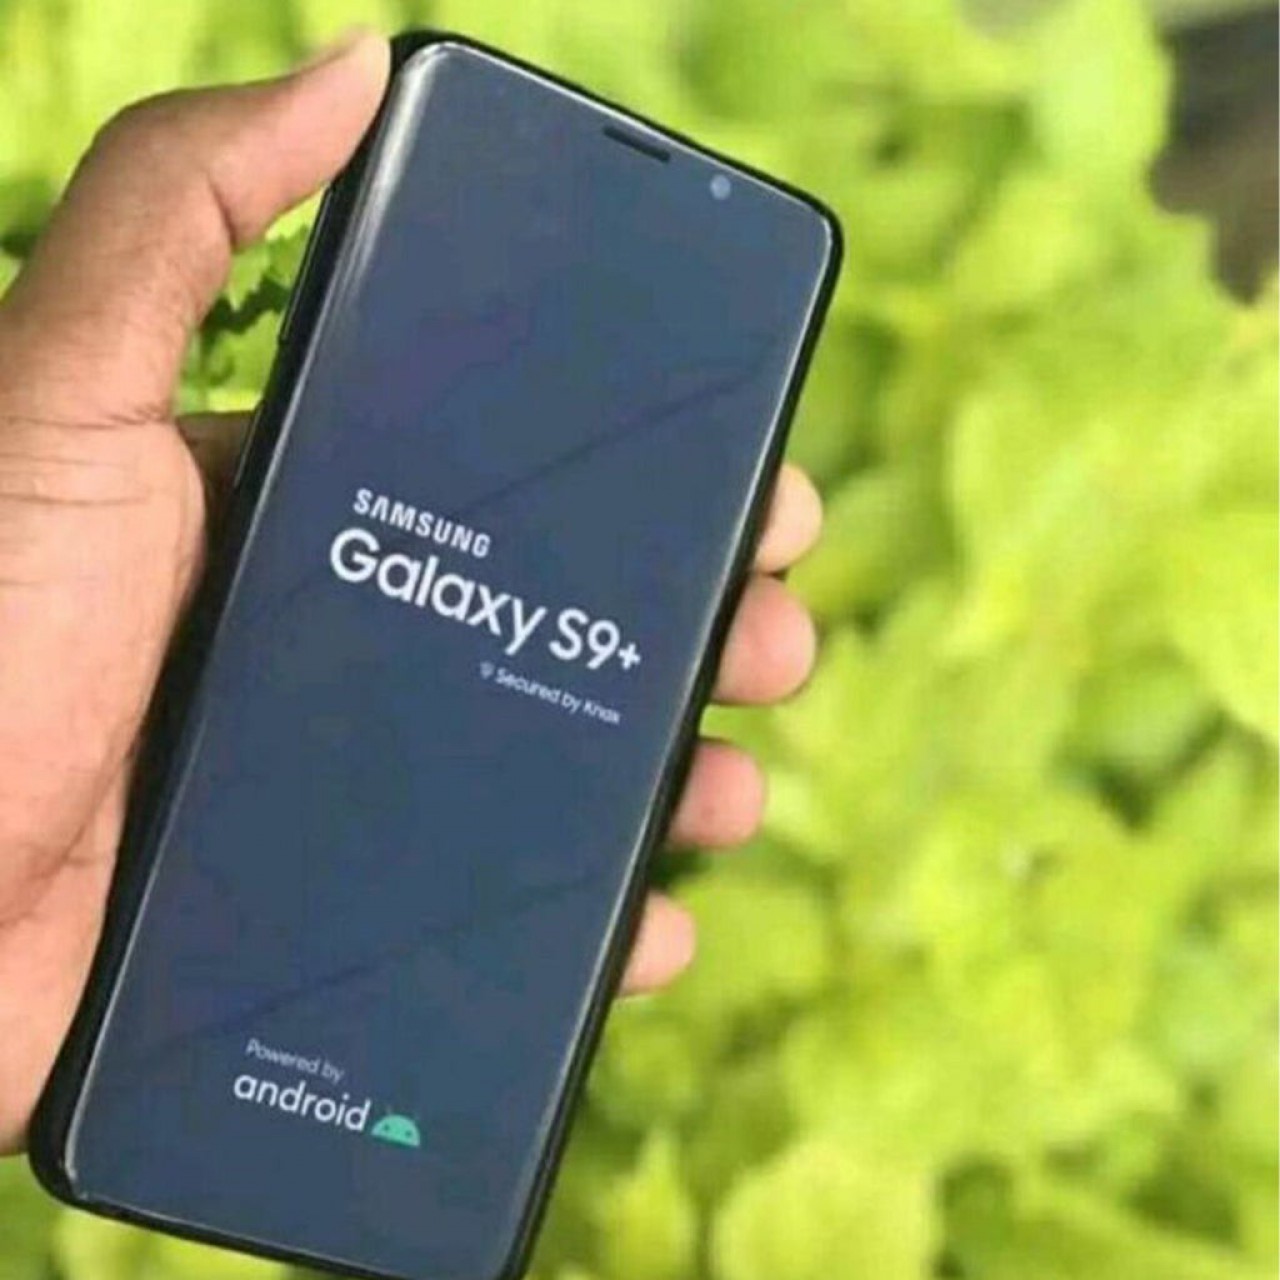 Samsung  Galaxy S9+, Telemóveis, Bissau